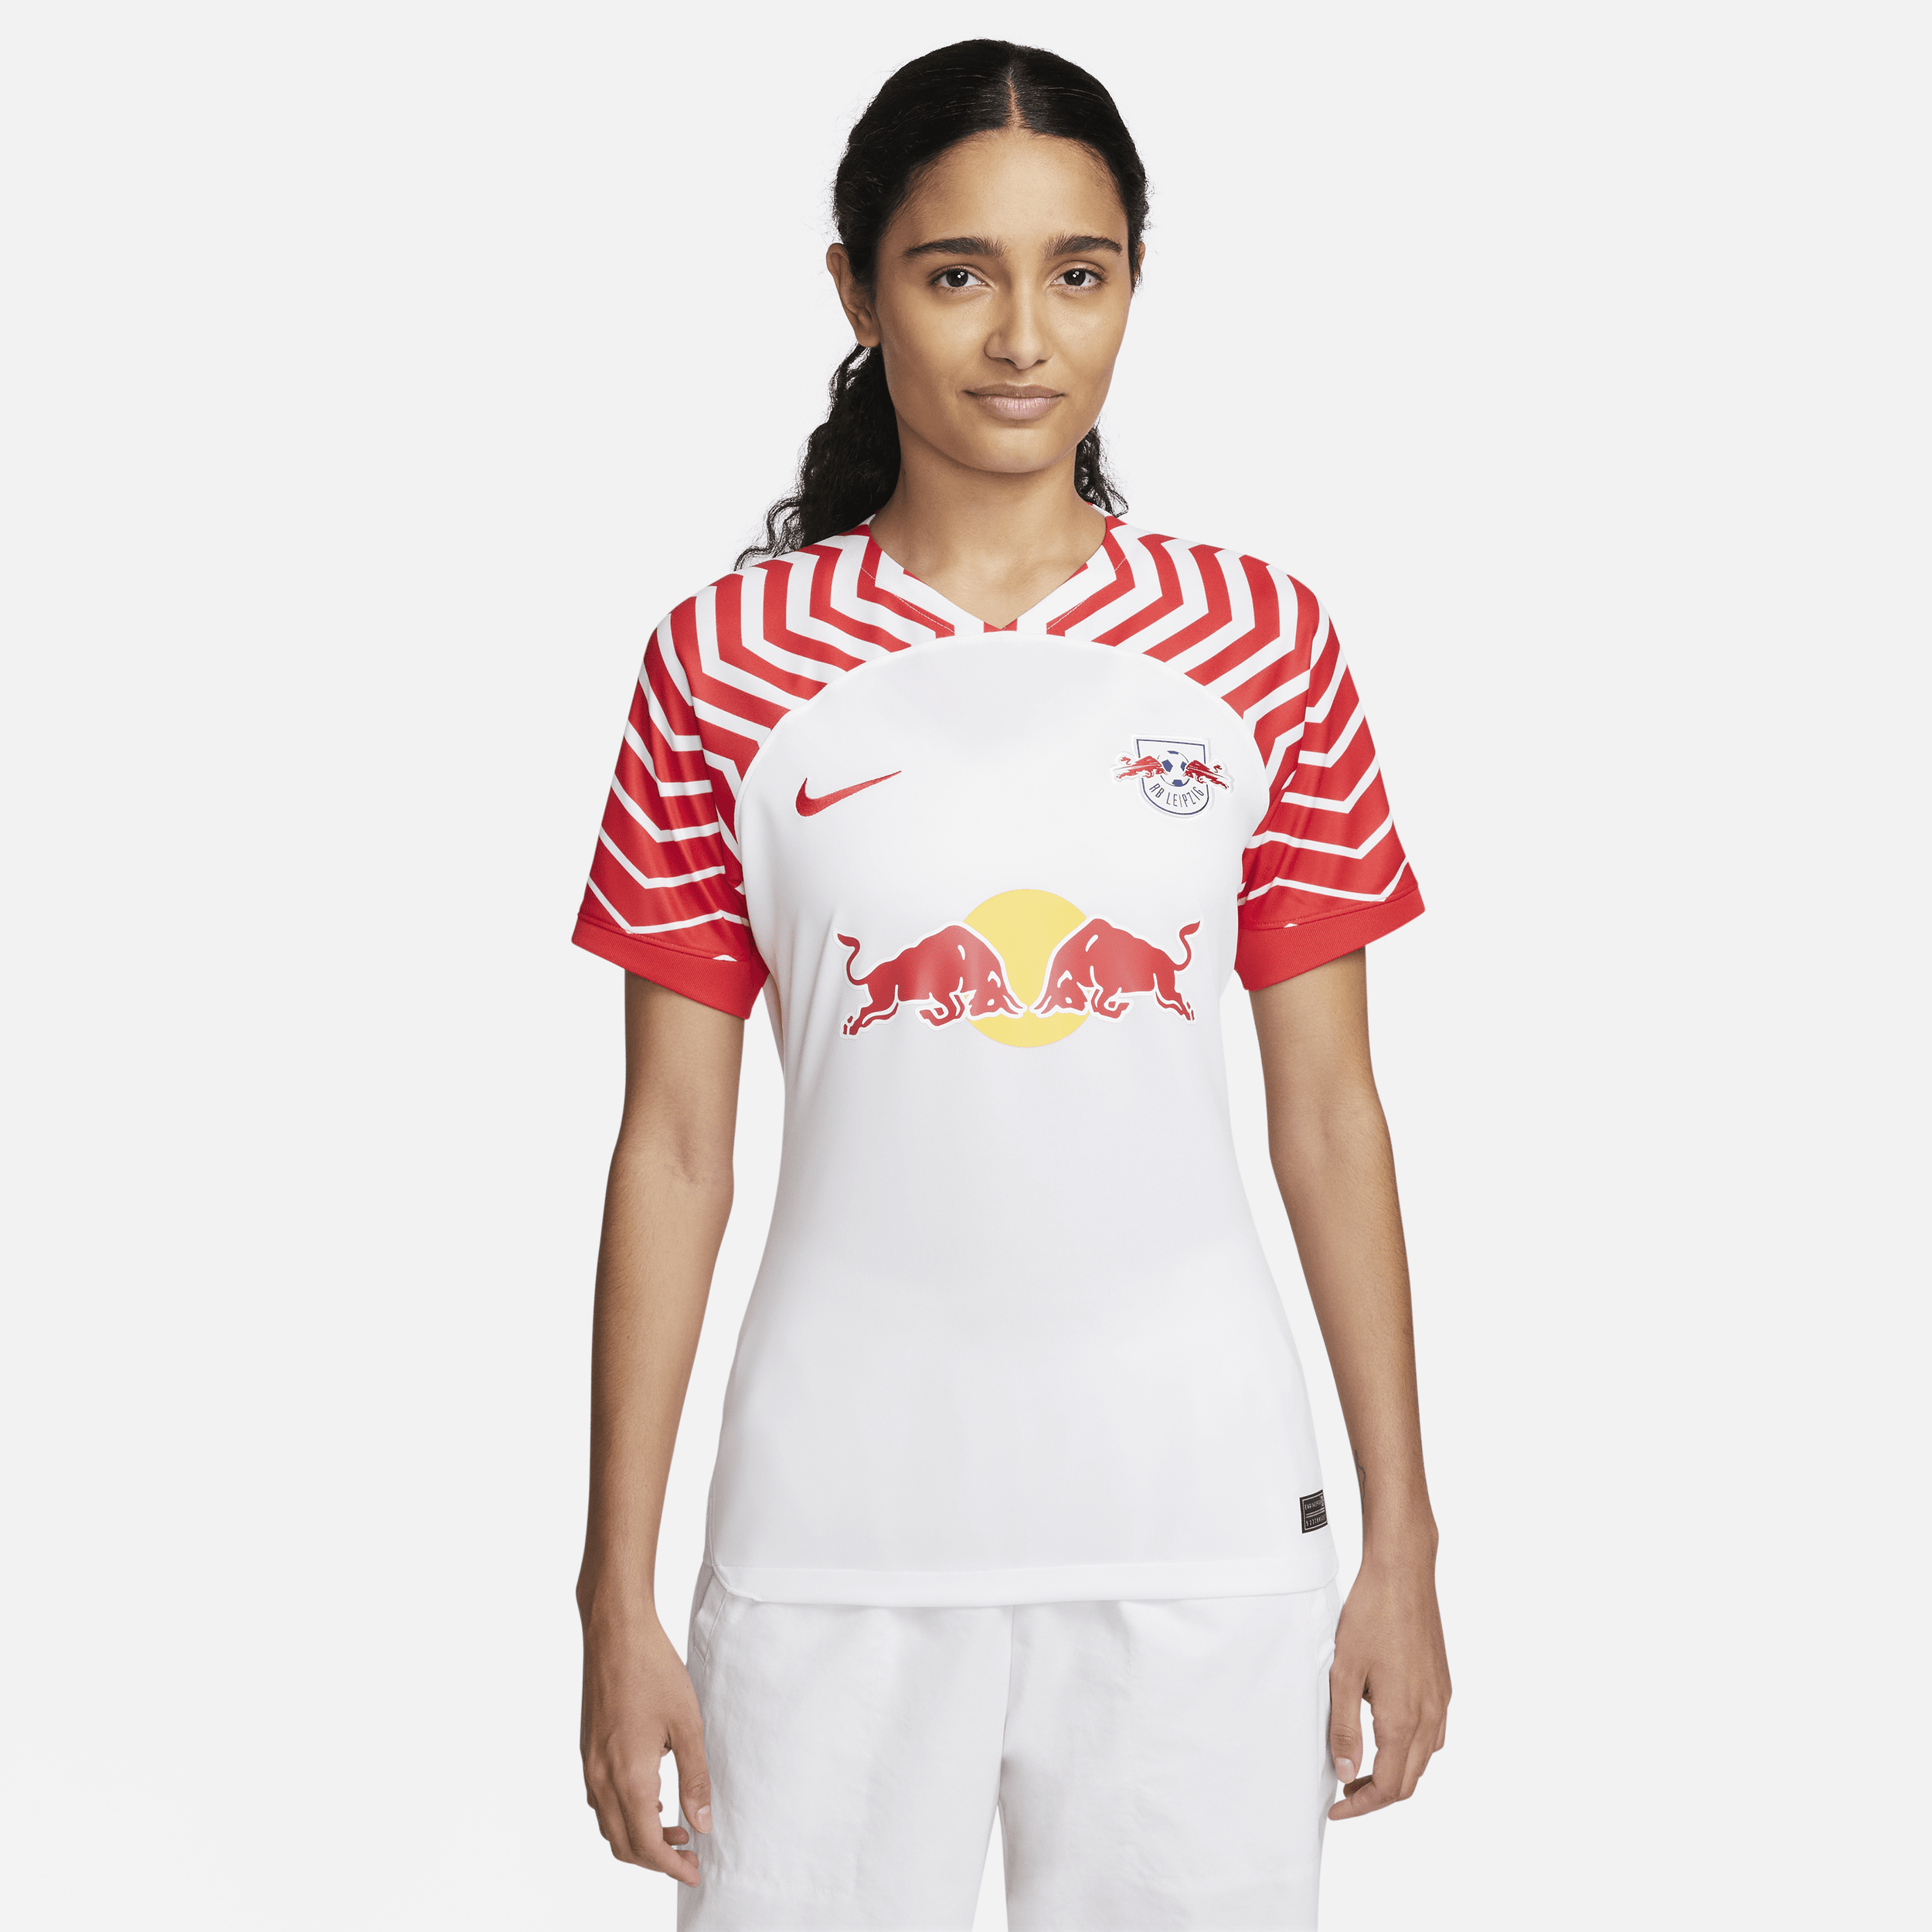 RB Leipzig 2023/24 Stadium Thuis Nike Dri-FIT voetbalshirt voor dames - Wit